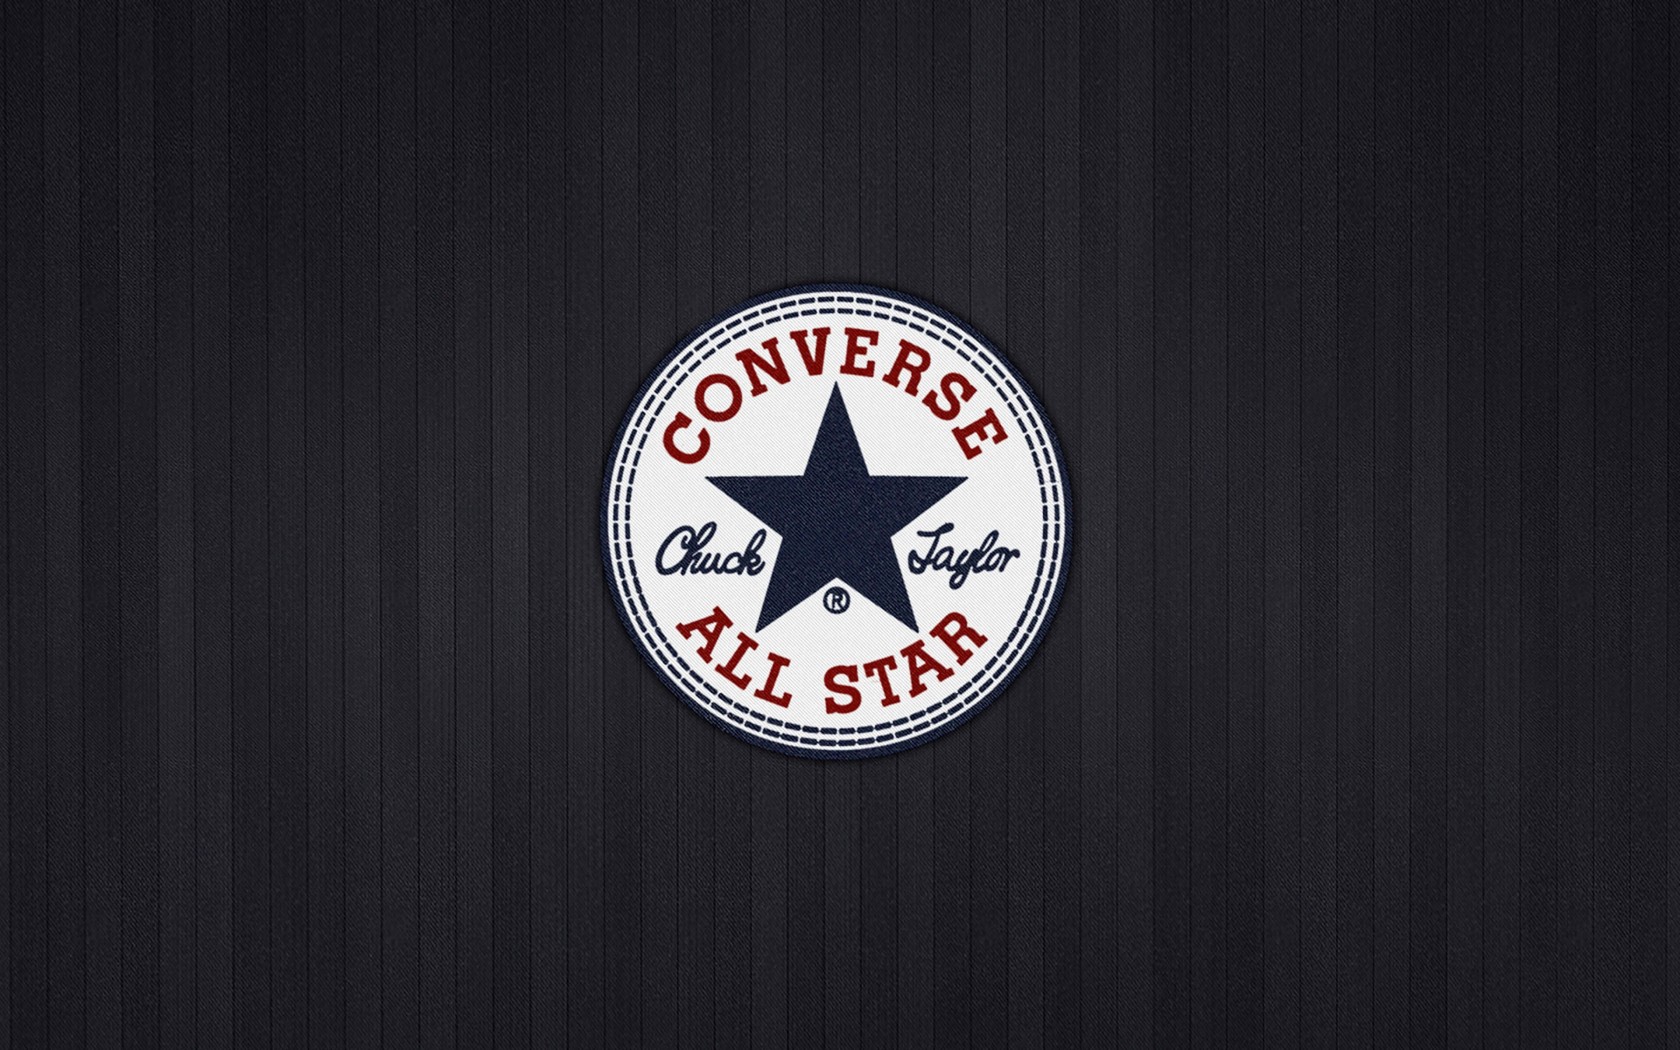 Converse All Star Wallpaper for Desktop 1680x1050